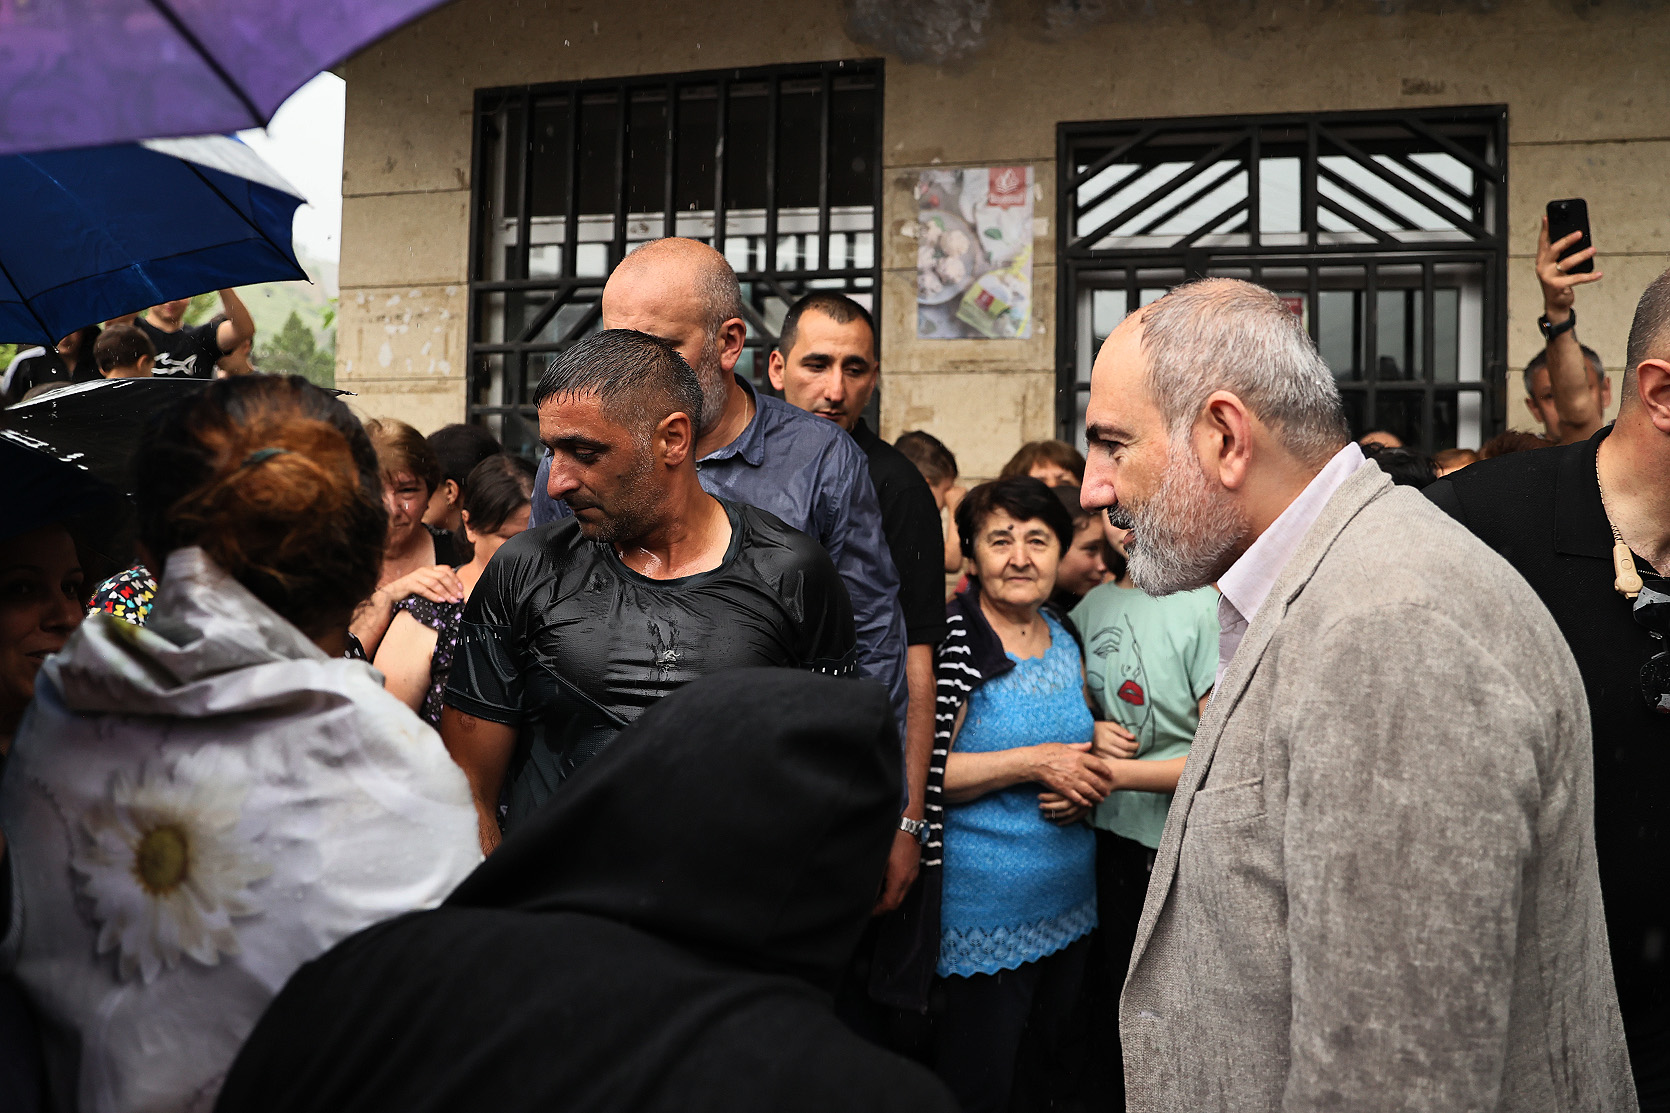 Կառավարությունը հեղեղումներից տուժած բնակչությանը միայնակ չի թողնելու. վարչապետն այցելել է աղետի գոտի